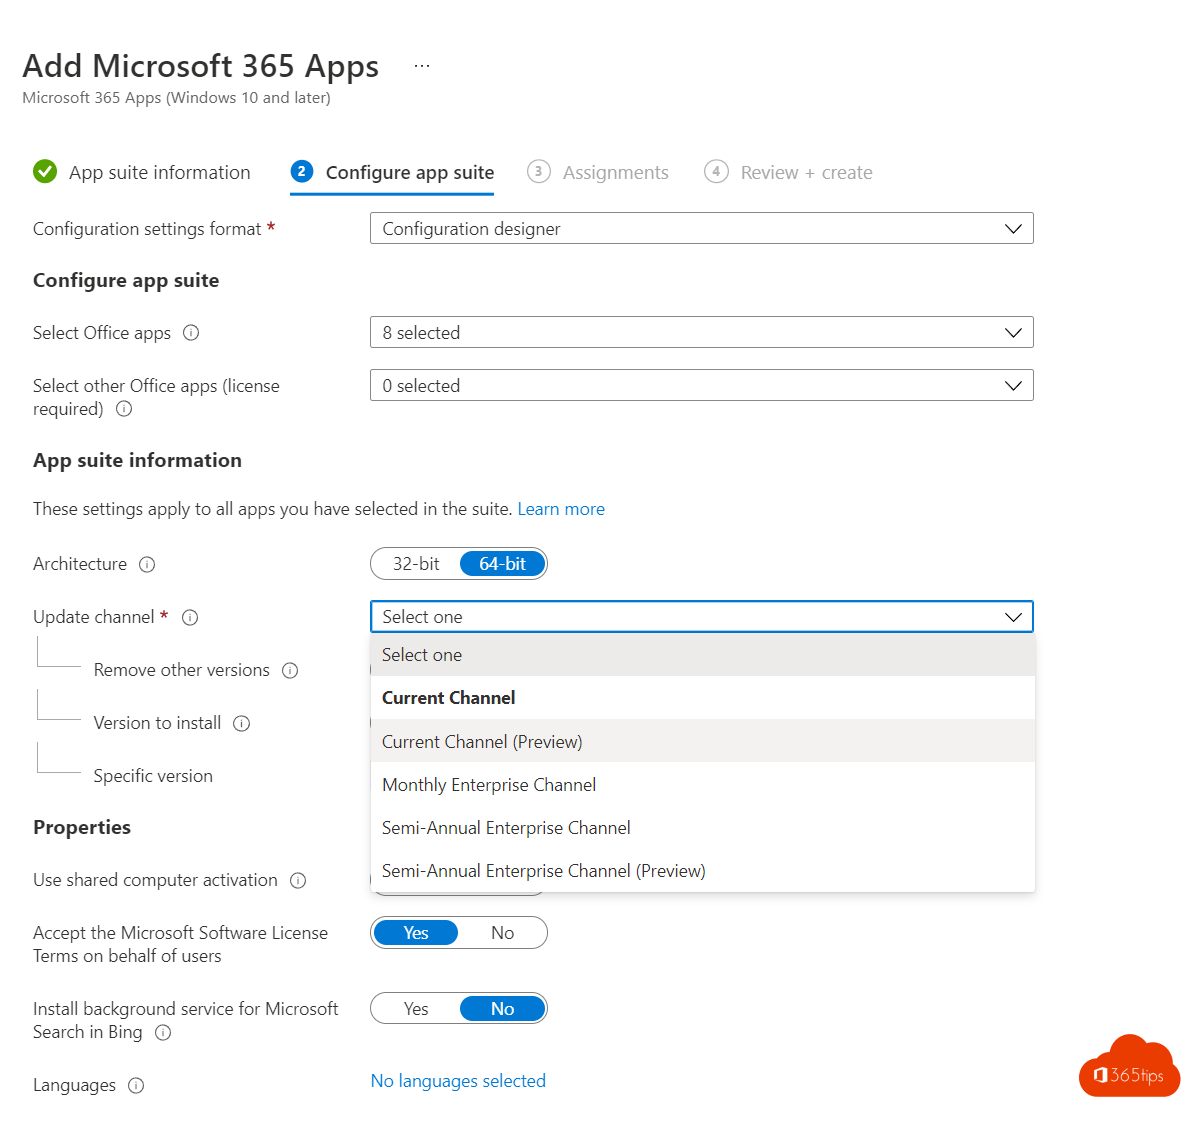 Bereitstellung von Microsoft 365 Apps mit Microsoft Intune in 8 Schritten